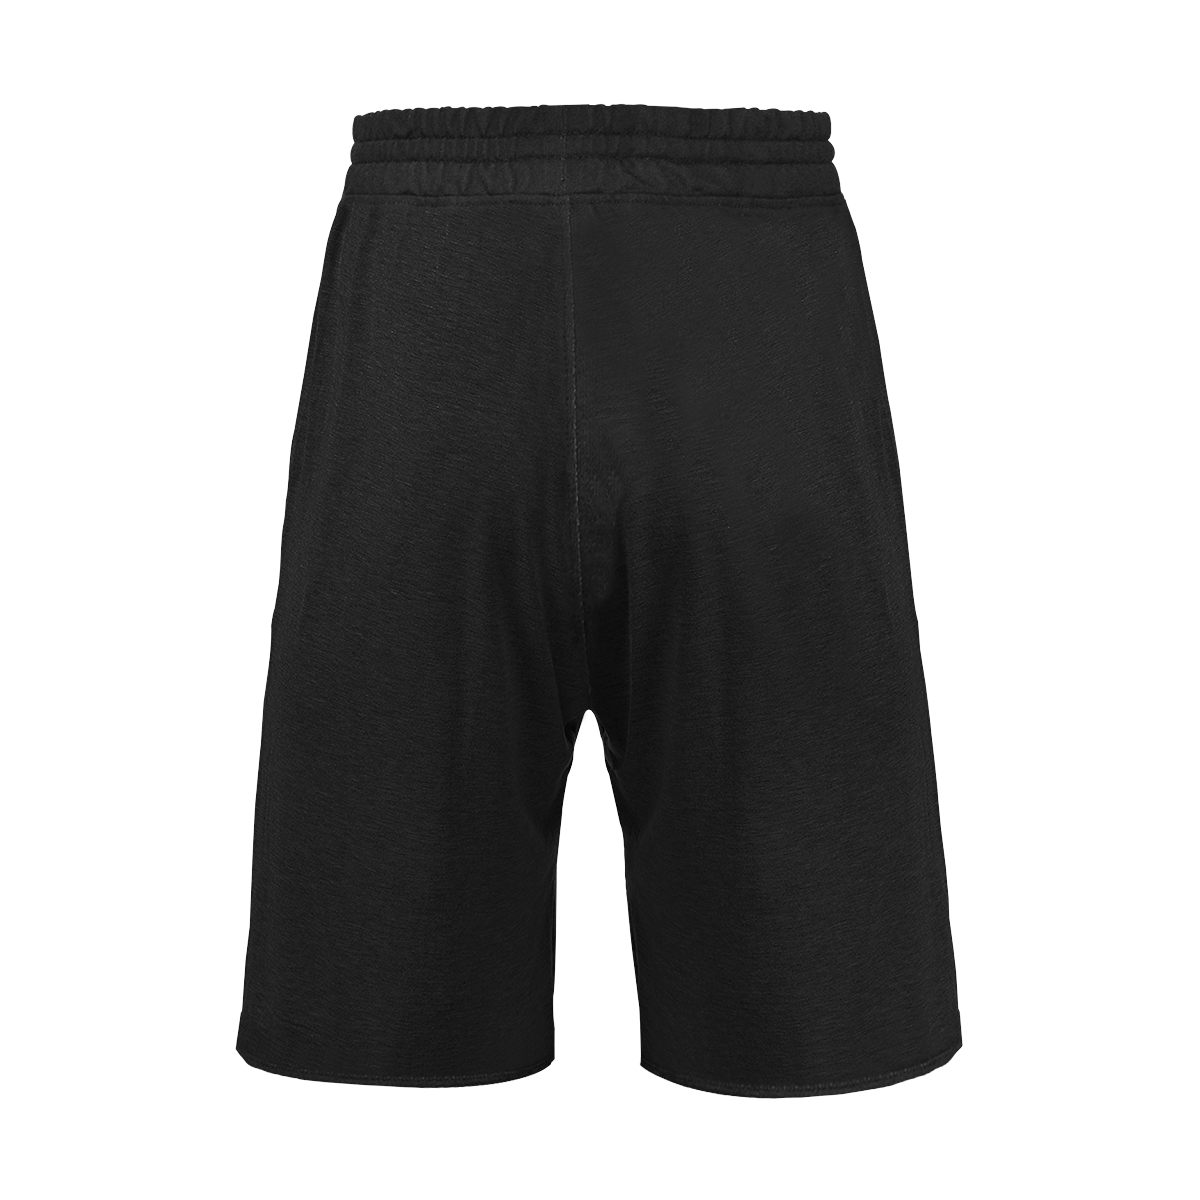 FF Black Shorts Men's All Over Print Casual Shorts (Model L23)